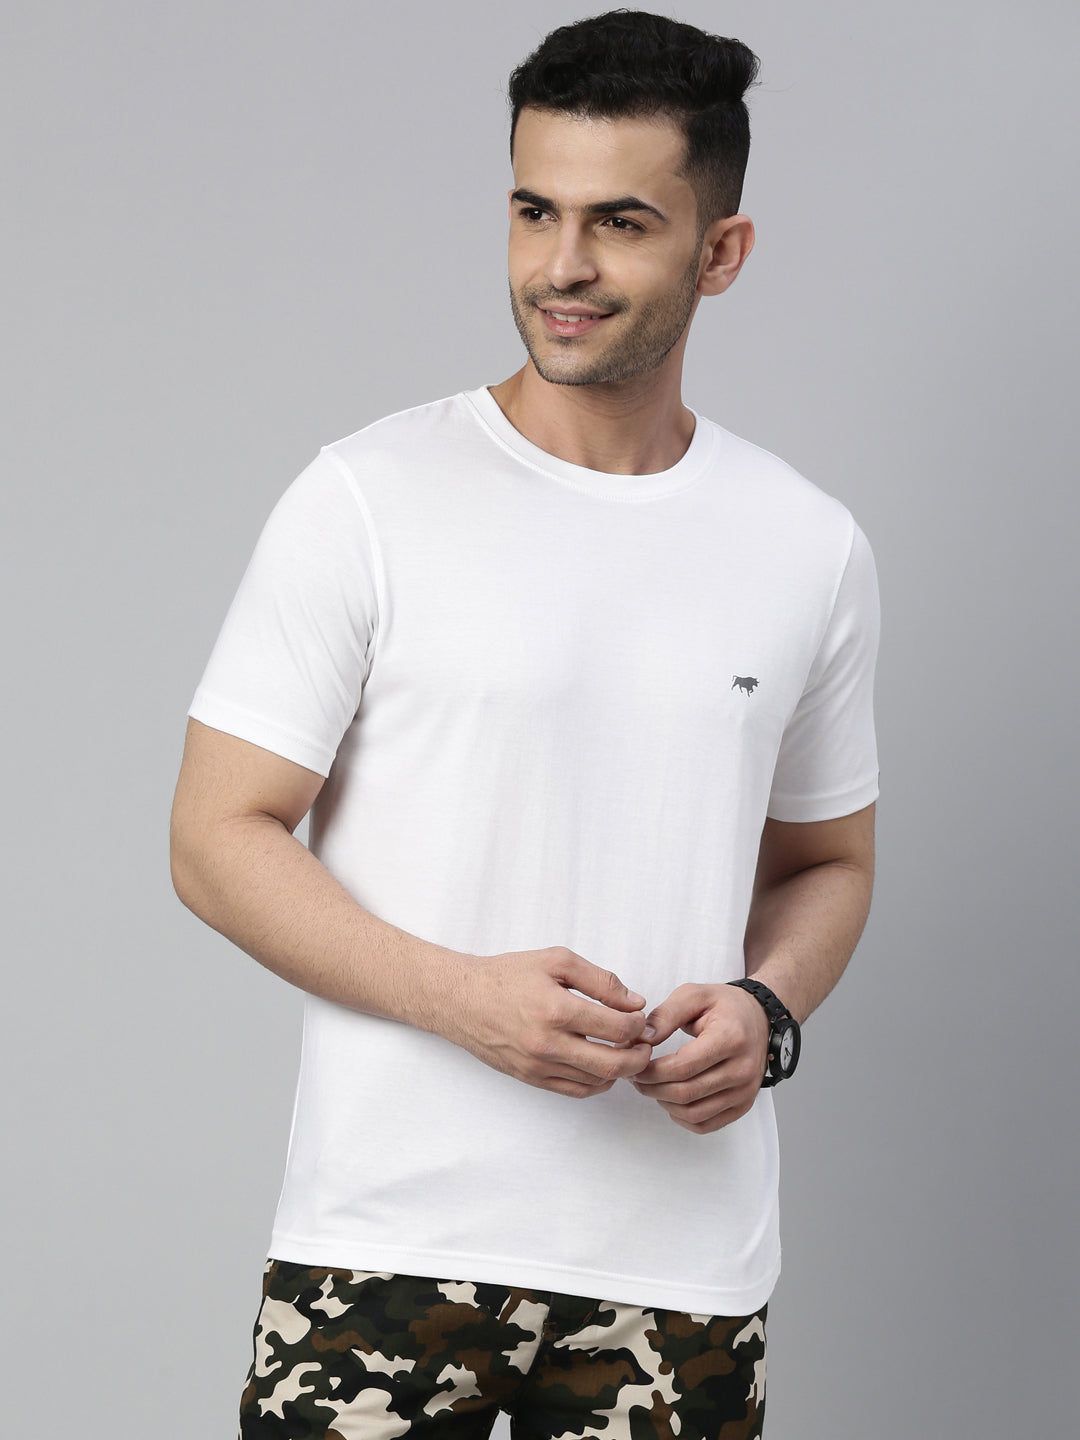 Basic Men's Plain T-Shirt, White T-Shirt, Half Sleeves T-Shirt